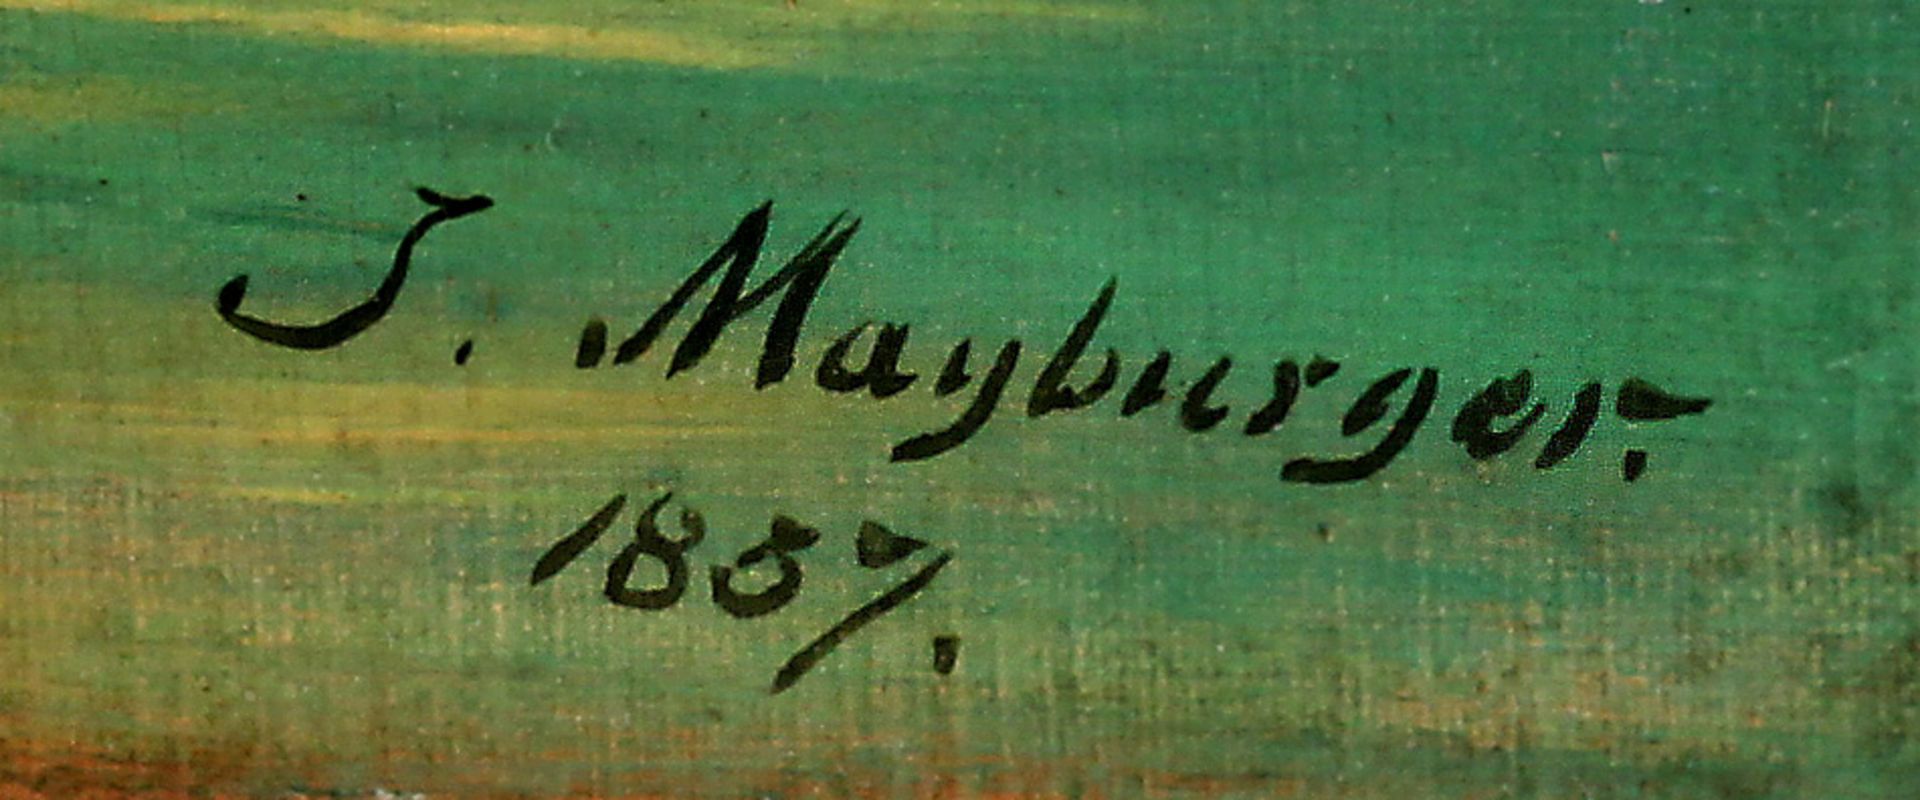 Mayburger, Joseph - Image 2 of 2